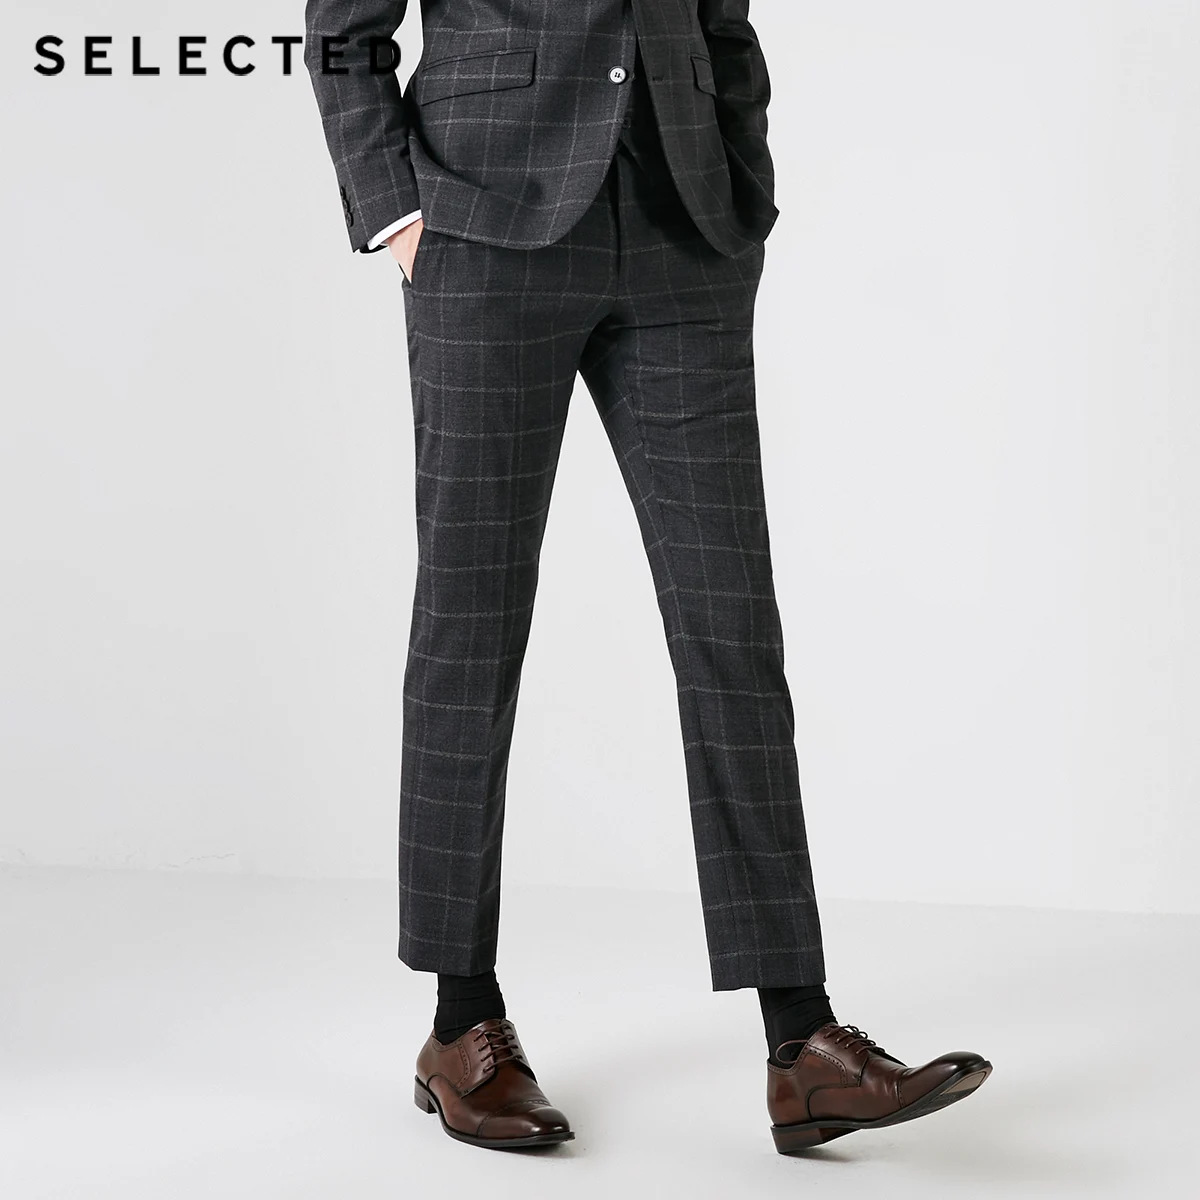 Фото Выбранный новый стиль мужской ткани бизнес случайные фитнес брюки S | 41838Y501